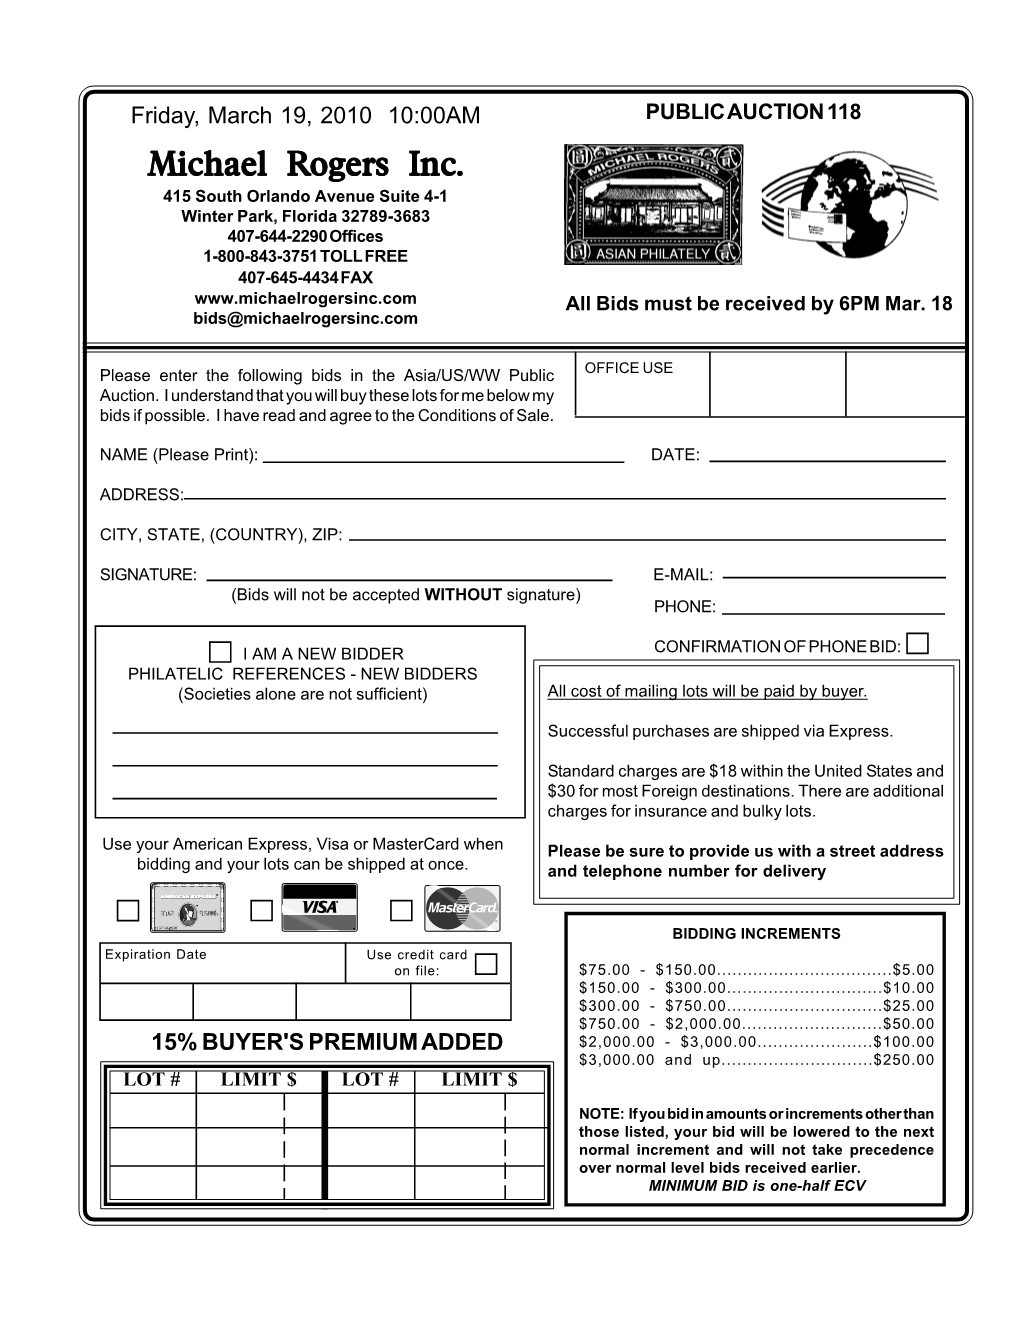 Michael Rogers Inc. Public Auction 118